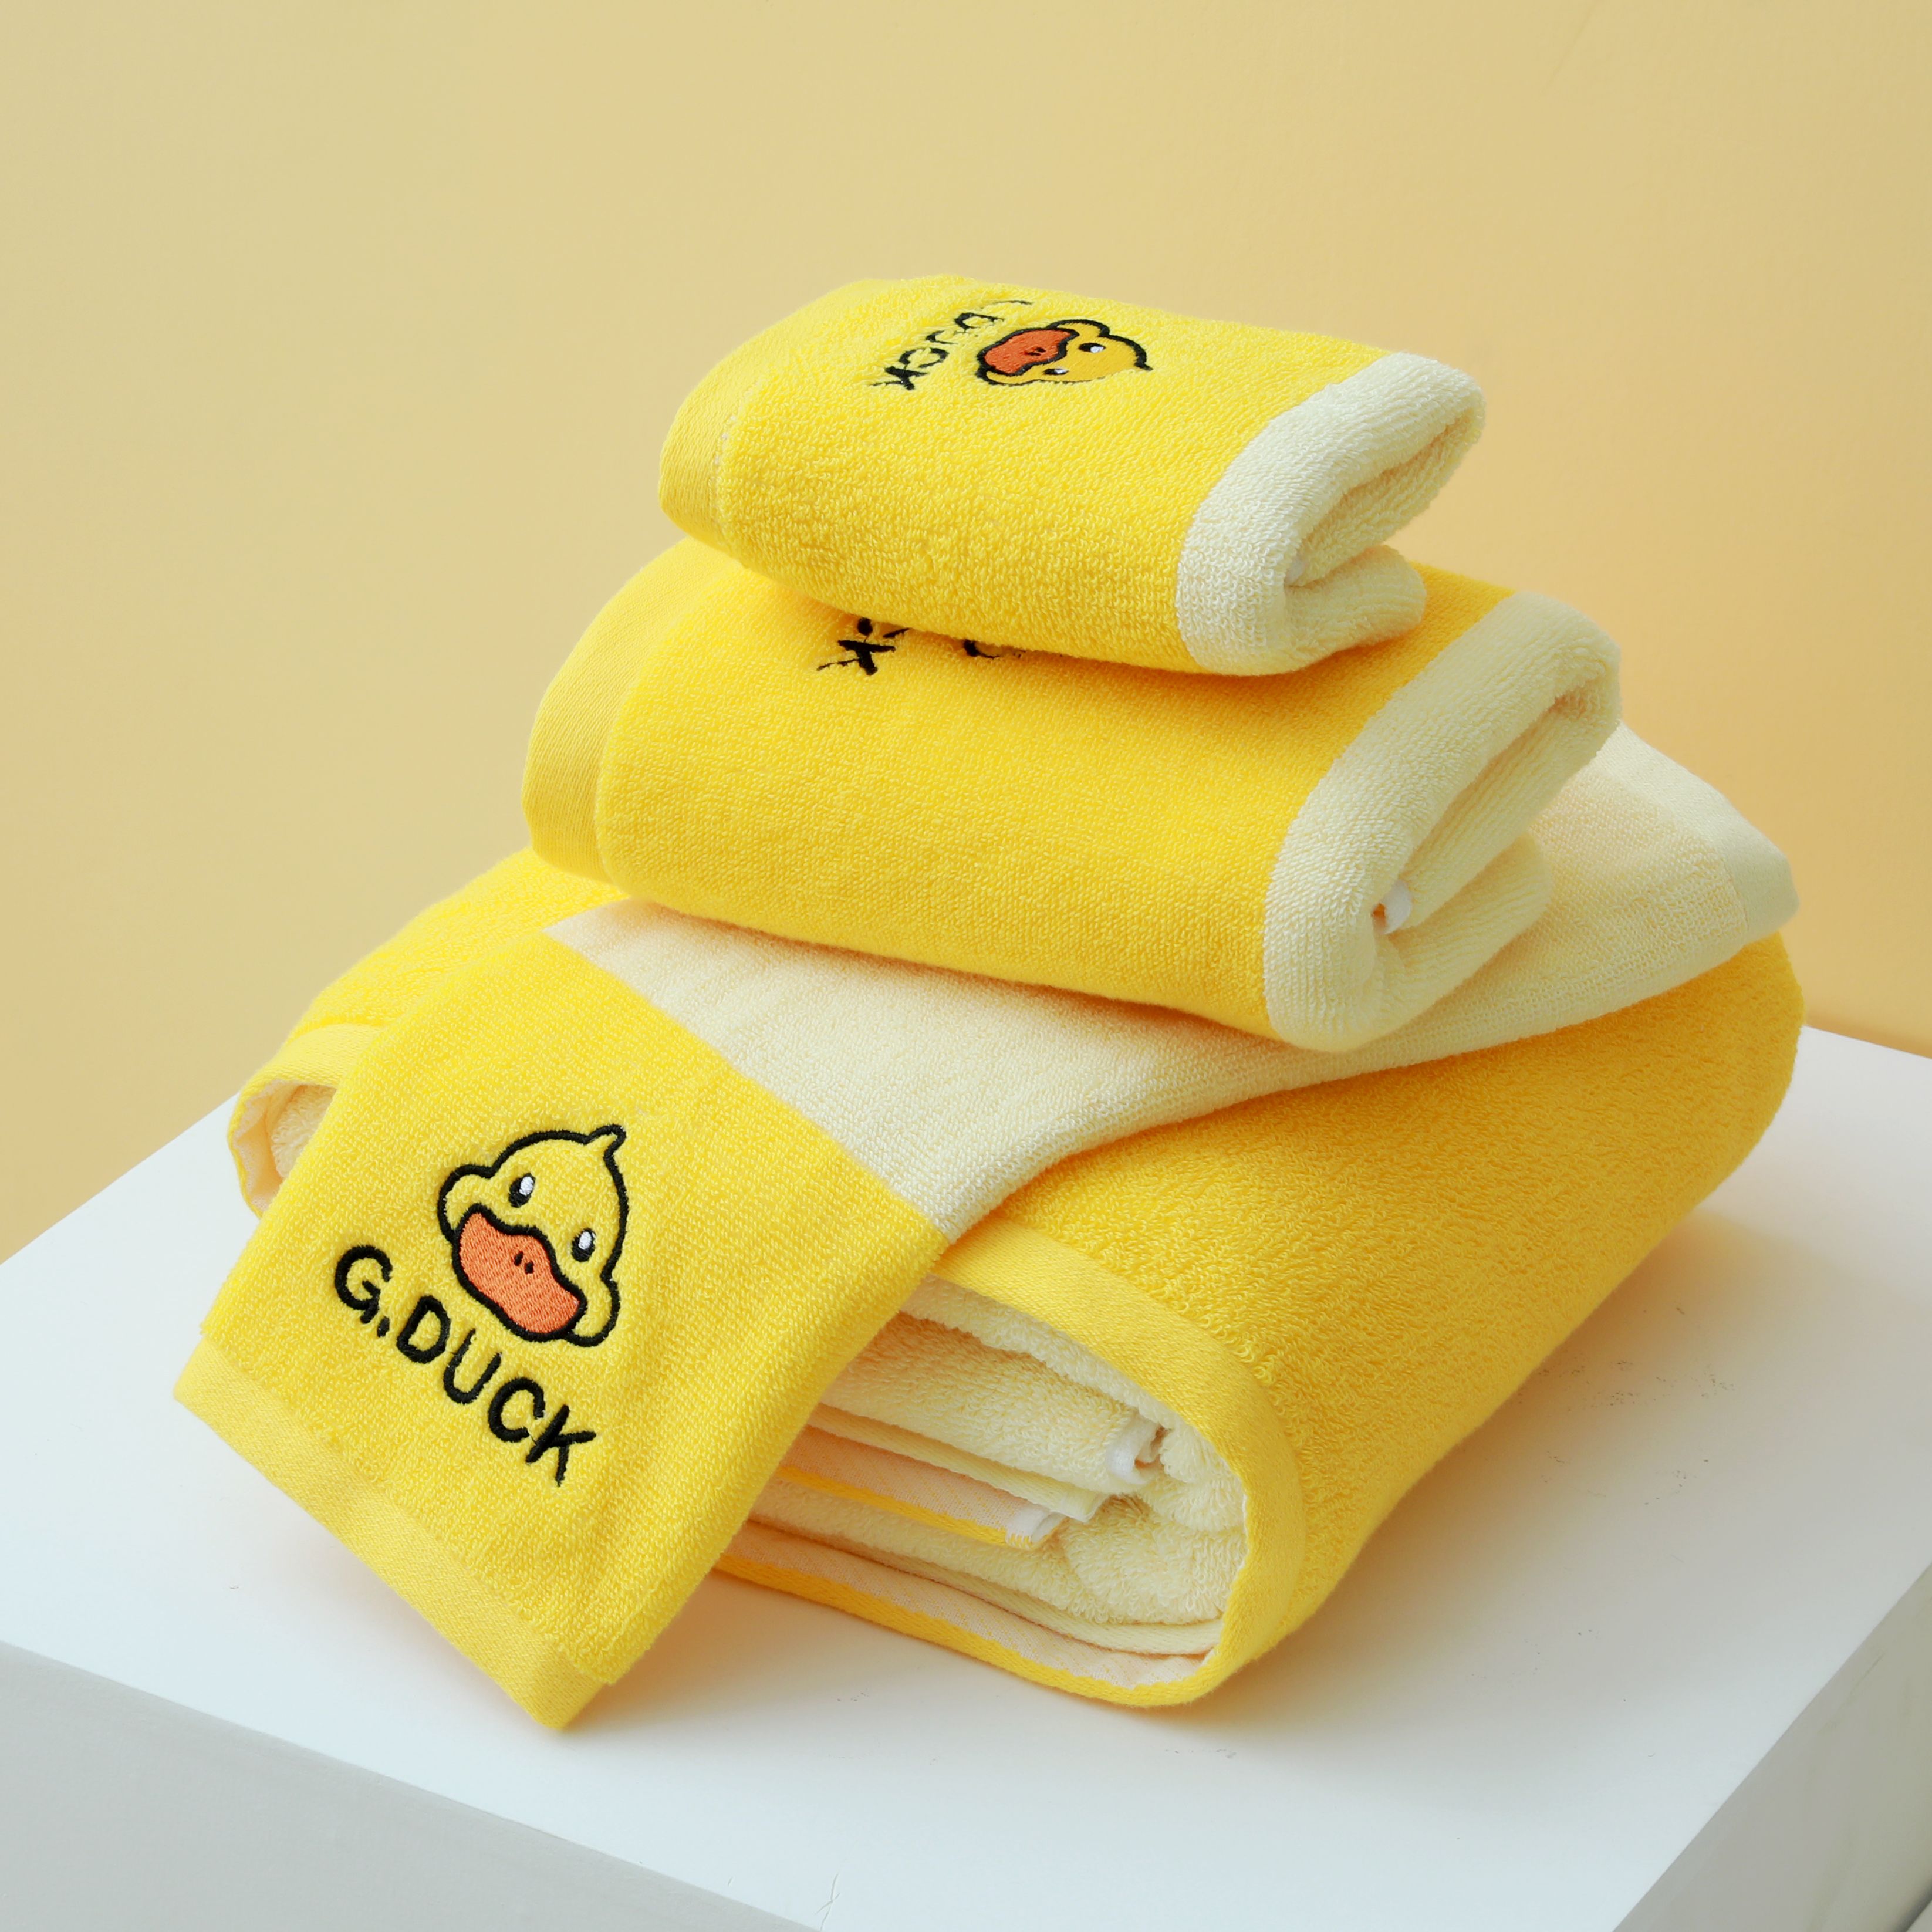 G.DUCK小黄鸭系列浴巾毛巾两条装组合 秒杀专用款式详情3